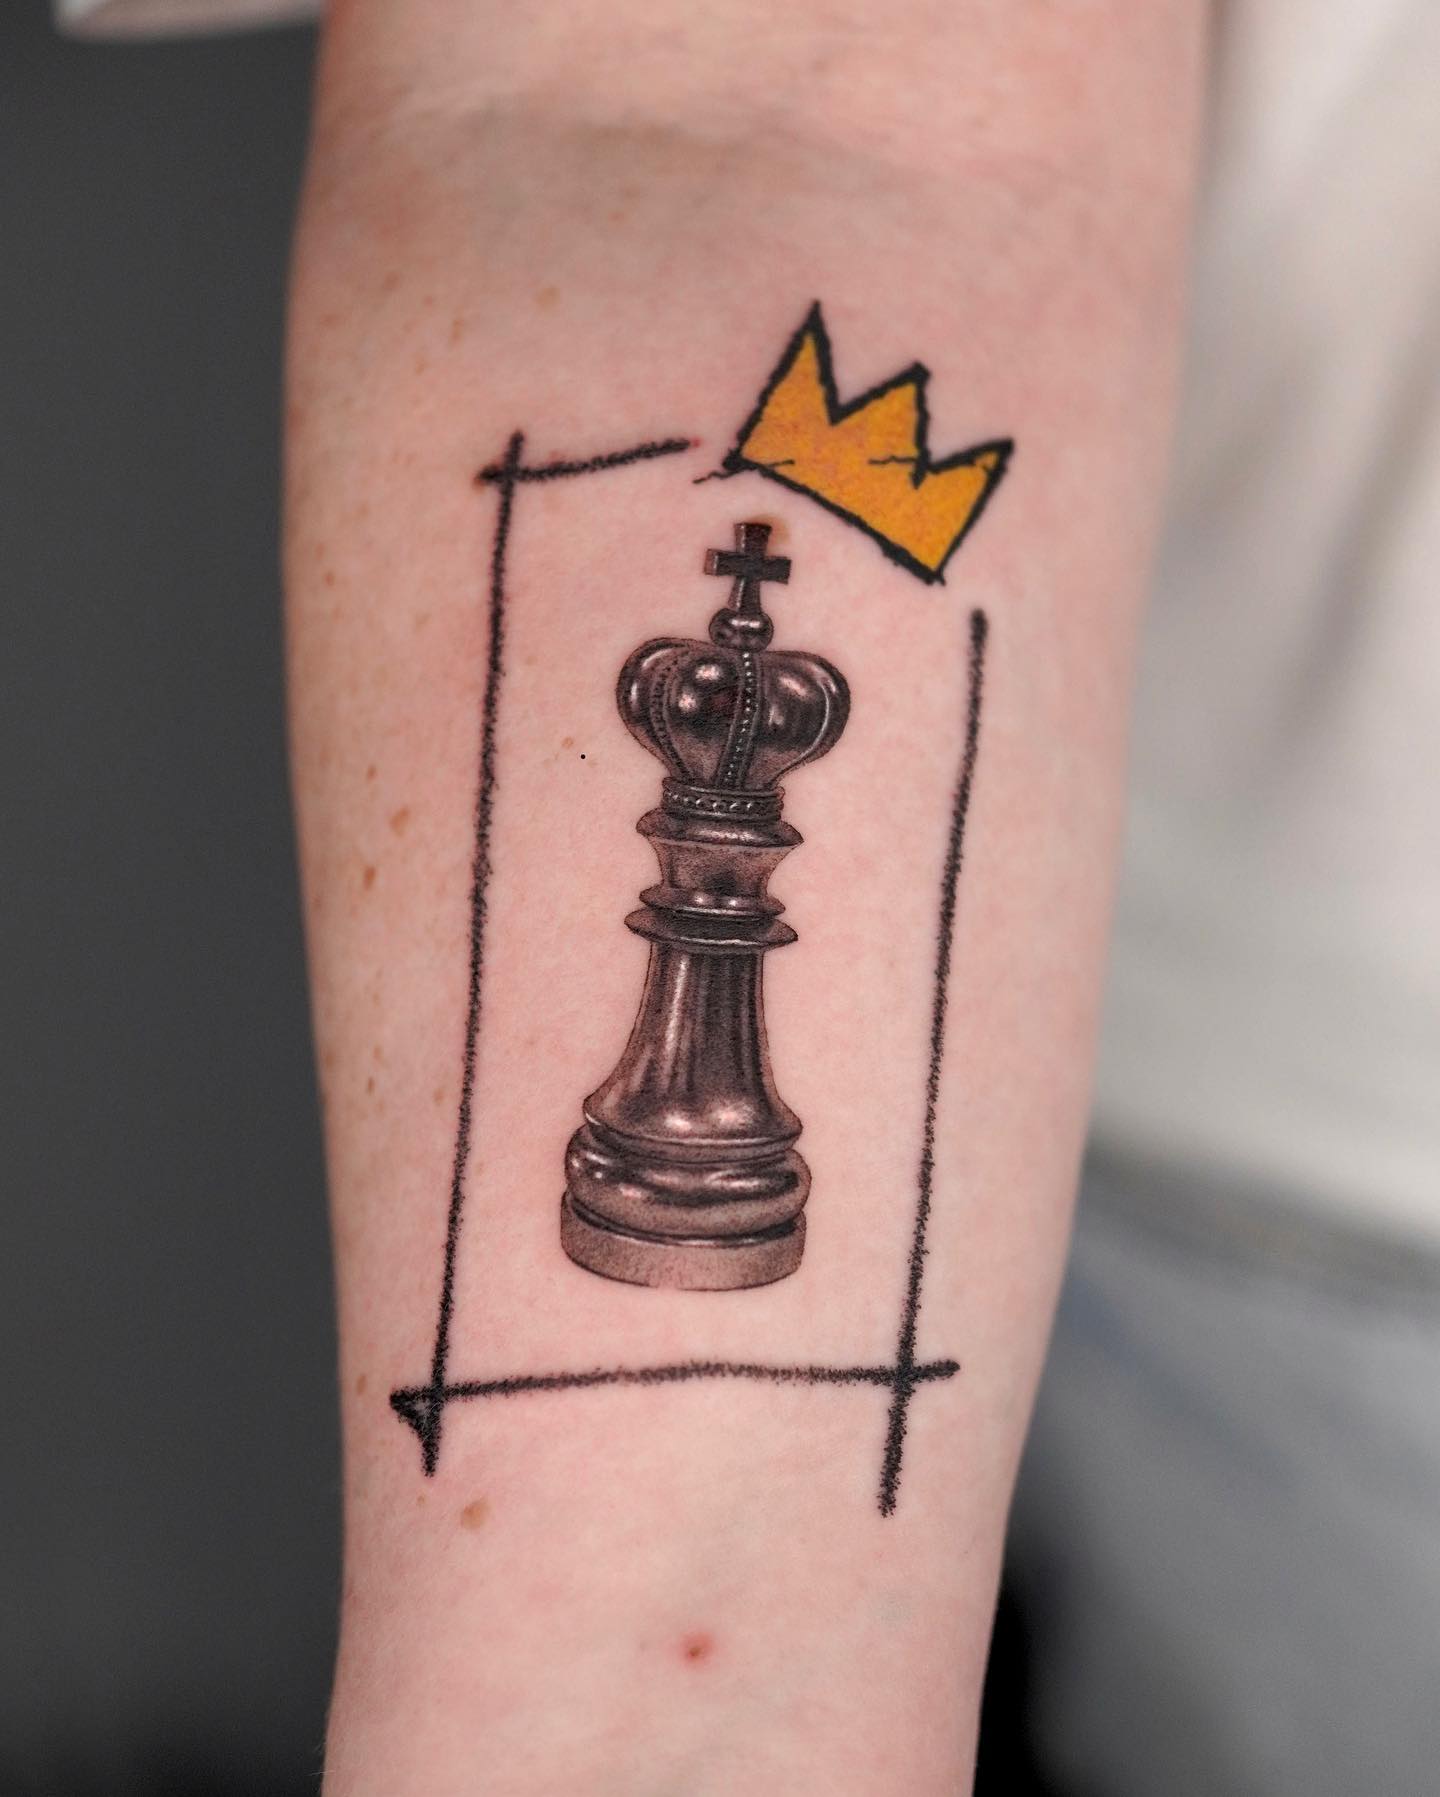 Tatuaje de ajedrez divertido y artístico